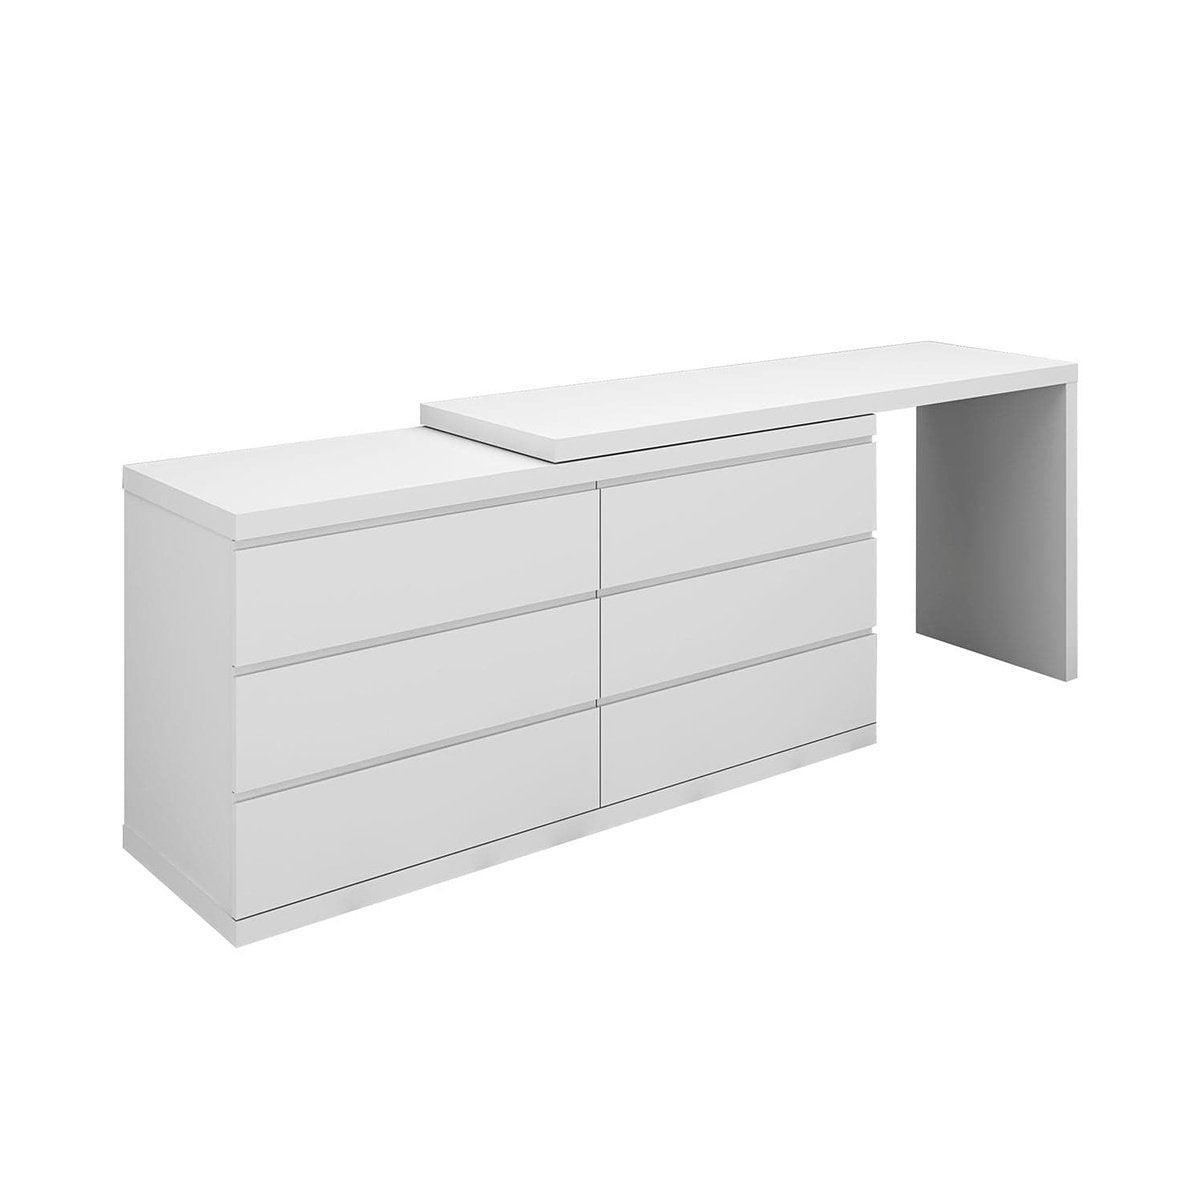 Whiteline Anna Dresser Extension, White DR1207X-WHT - Bedroom Depot USA